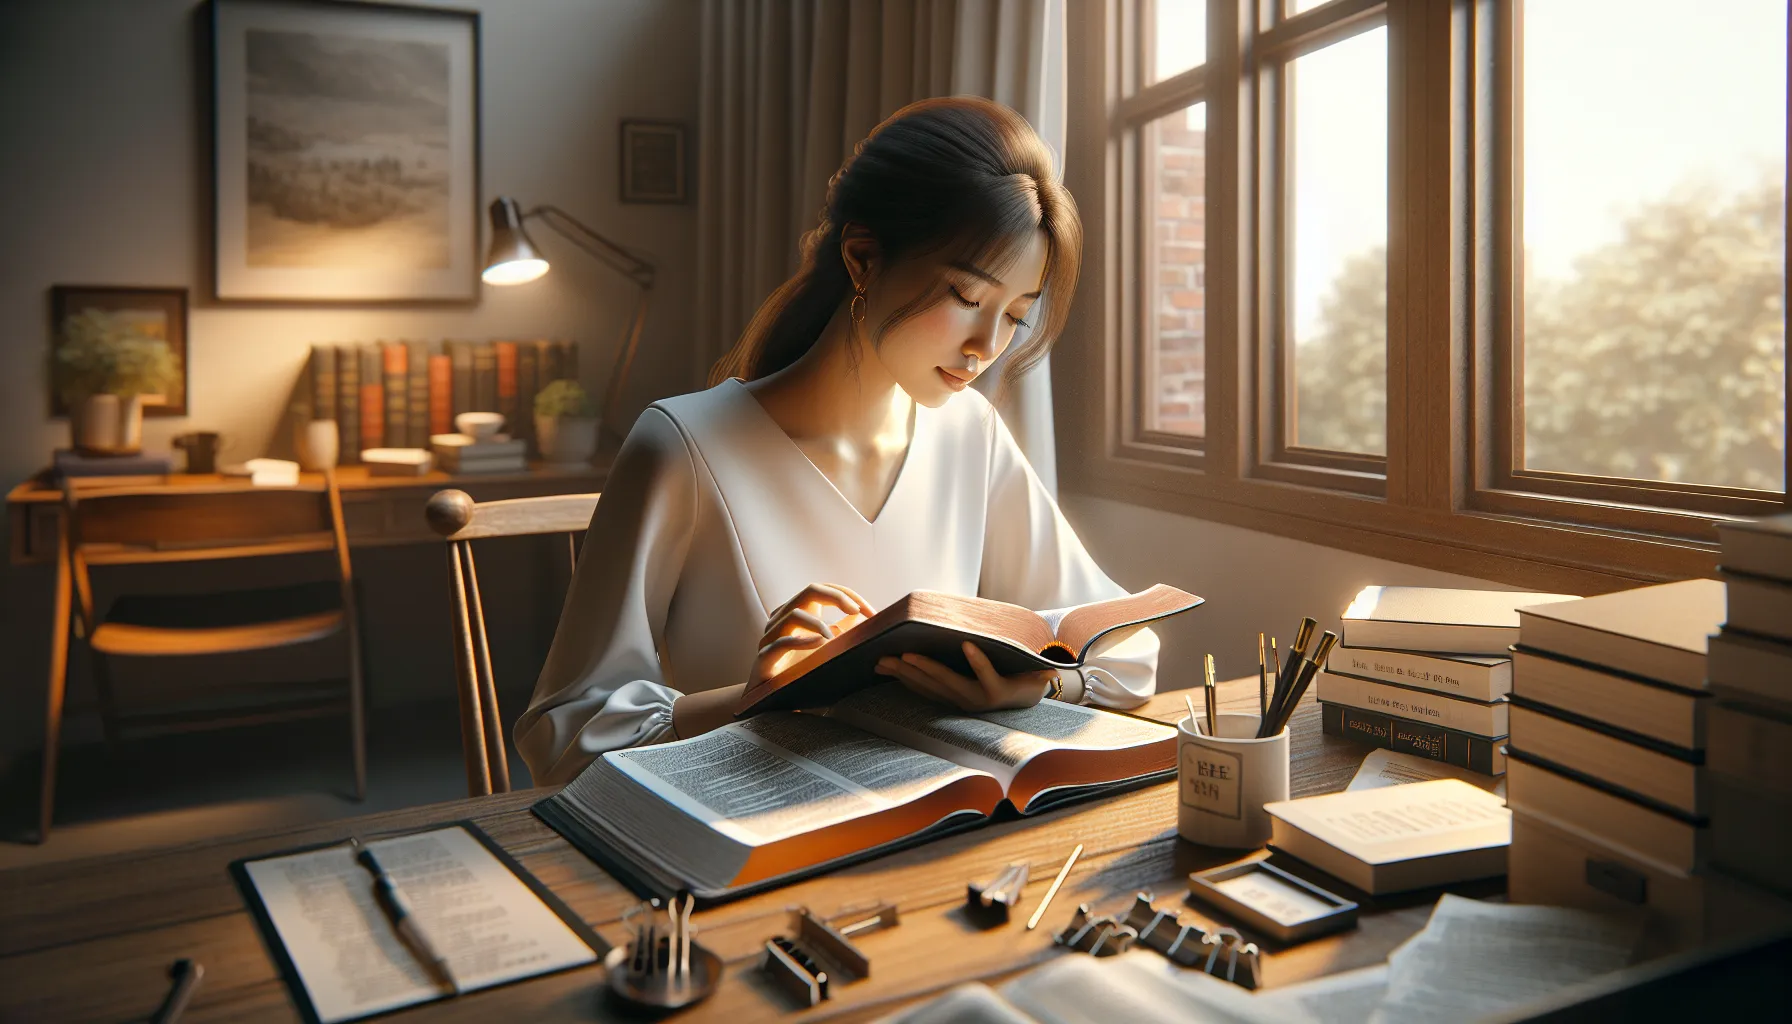 Imagen que muestra una persona leyendo la Biblia mientras trabaja en su escritorio, reflejando el valor y propósito del trabajo según la enseñanza bíblica.